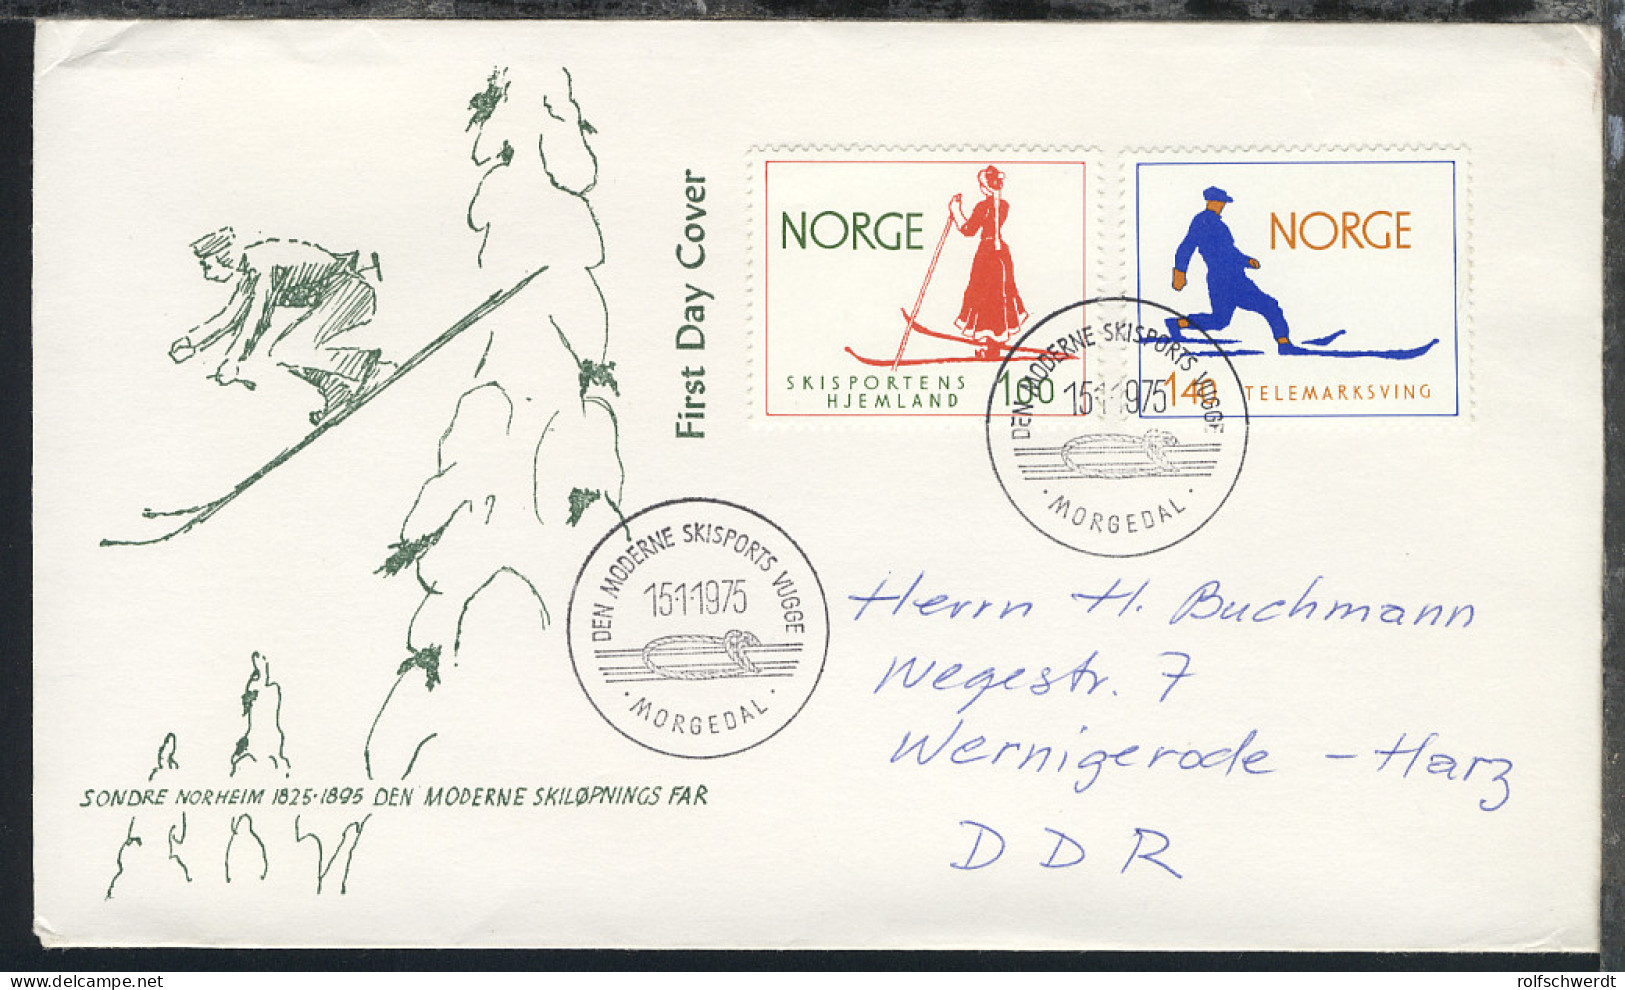 Norwegen 1975/83 9 Verschiedene FDC, 2x Ohne Anschrift, 7x Nach Wernigerode/DDR - Postal Stationery